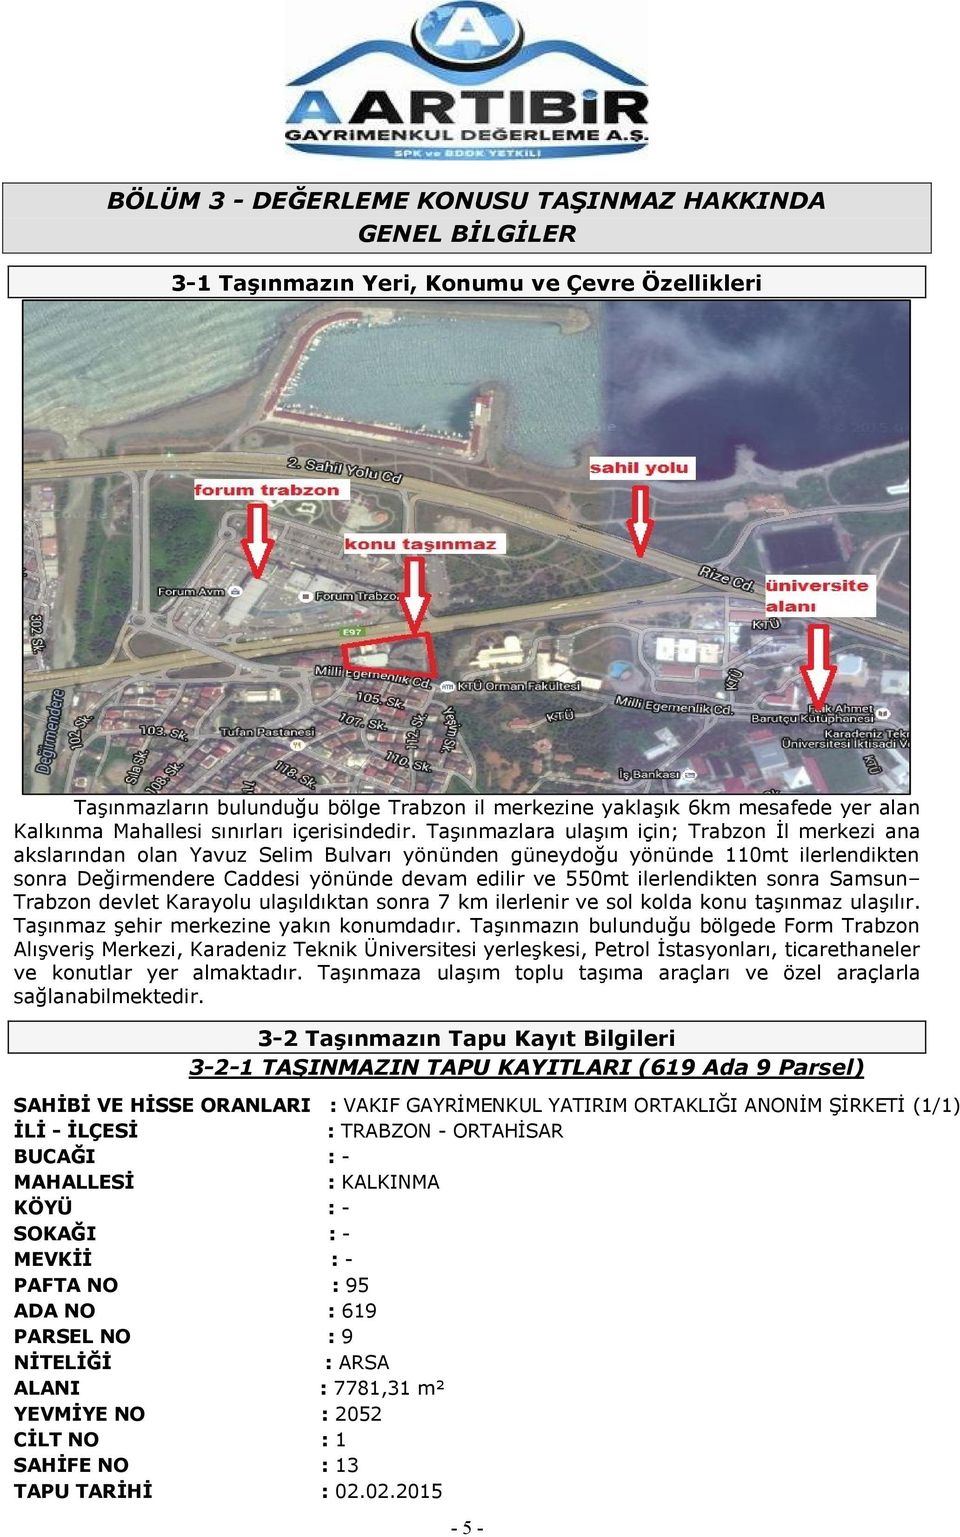 TaĢınmazlara ulaģım için; Trabzon Ġl merkezi ana akslarından olan Yavuz Selim Bulvarı yönünden güneydoğu yönünde 110mt ilerlendikten sonra Değirmendere Caddesi yönünde devam edilir ve 550mt